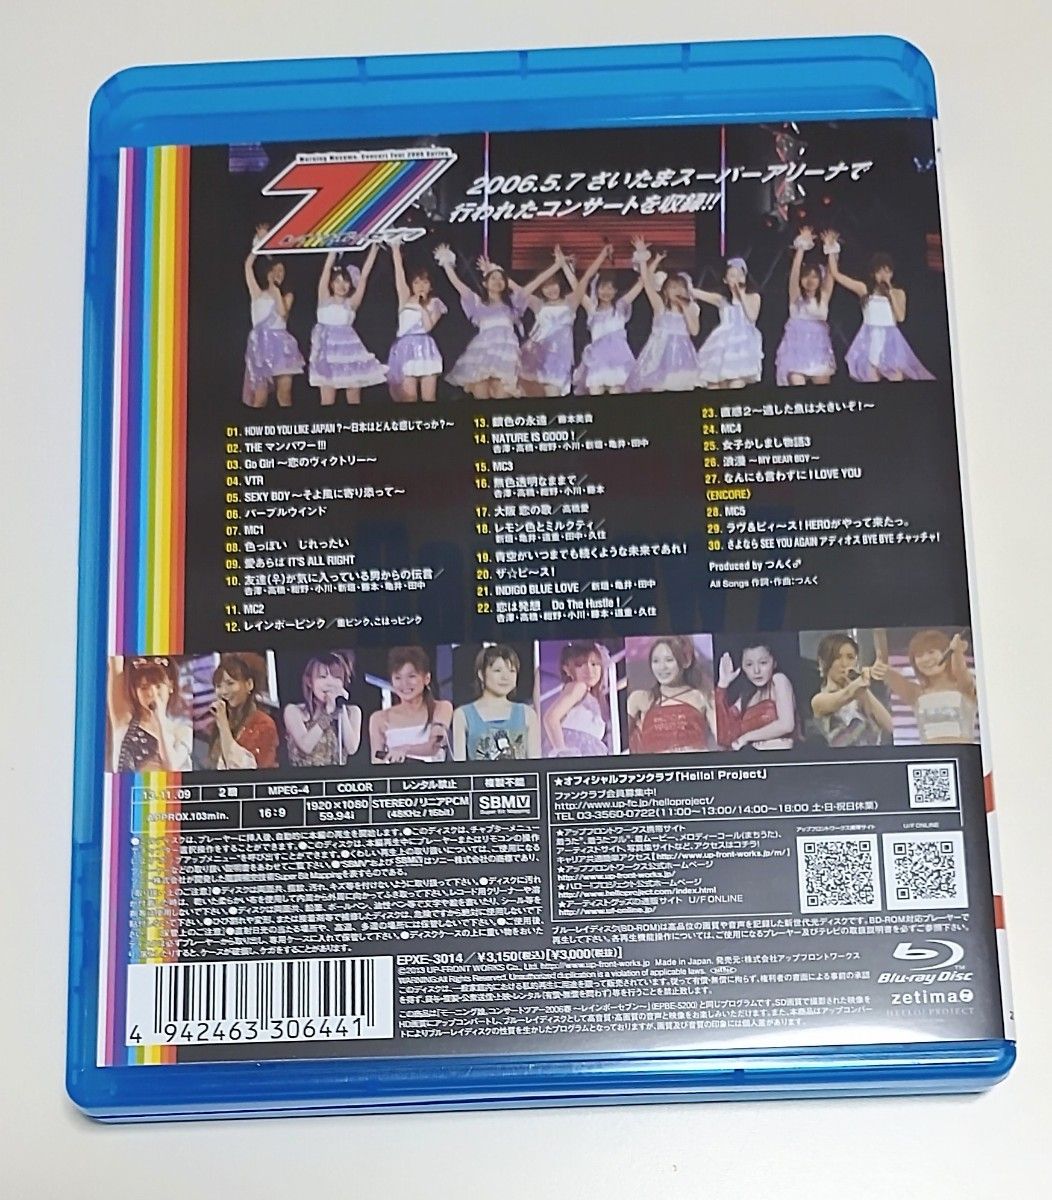 モーニング娘。 /コンサートツアー2006春~レインボーセブン~ Blu-ray